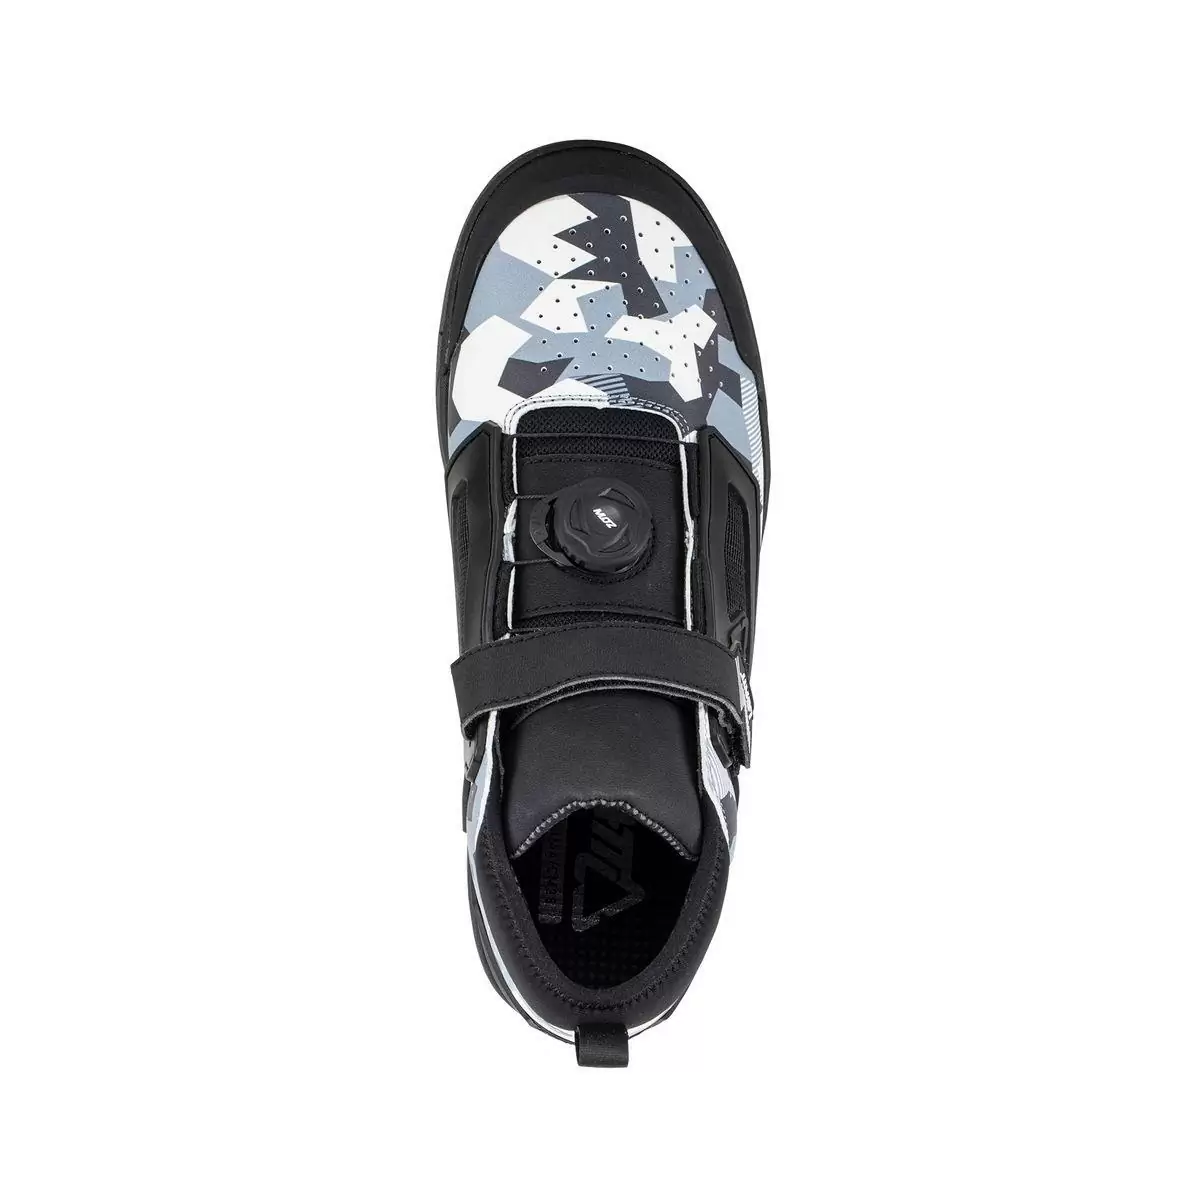 Chaussures VTT 3.0 Flat Pro Blanc/Noir Taille 44 #2